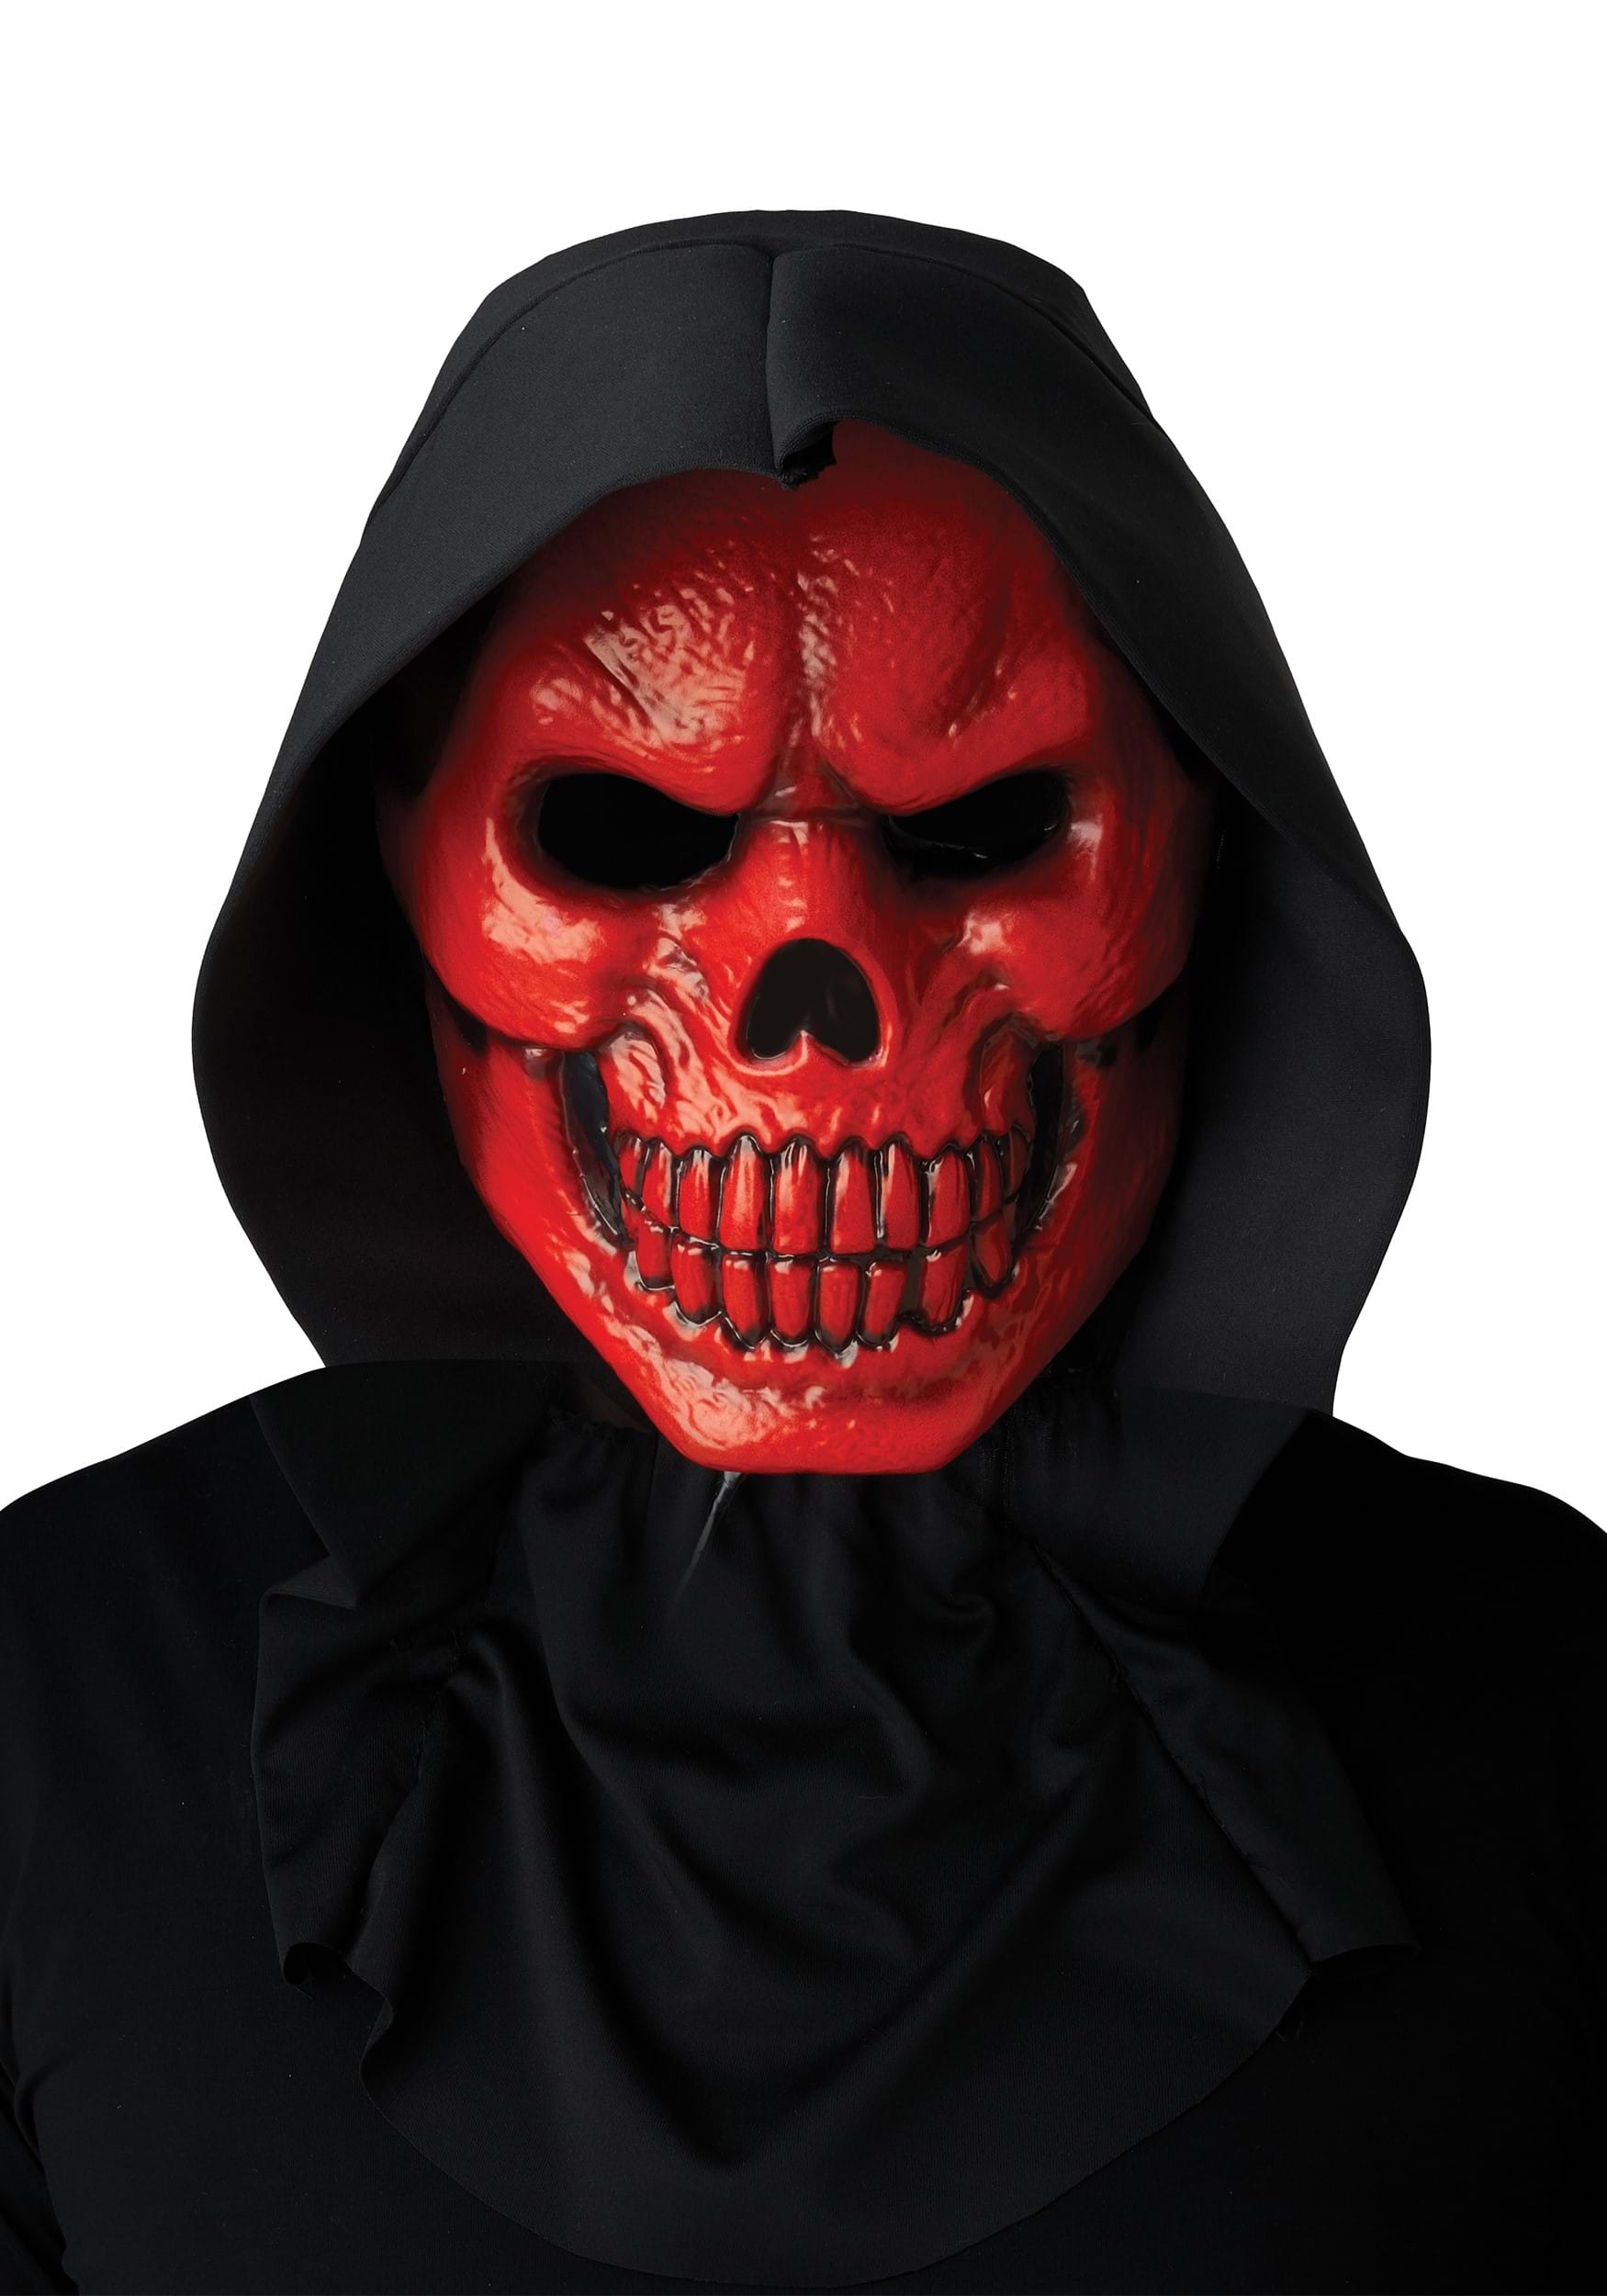 Blood Skull Light Up Costume Mask